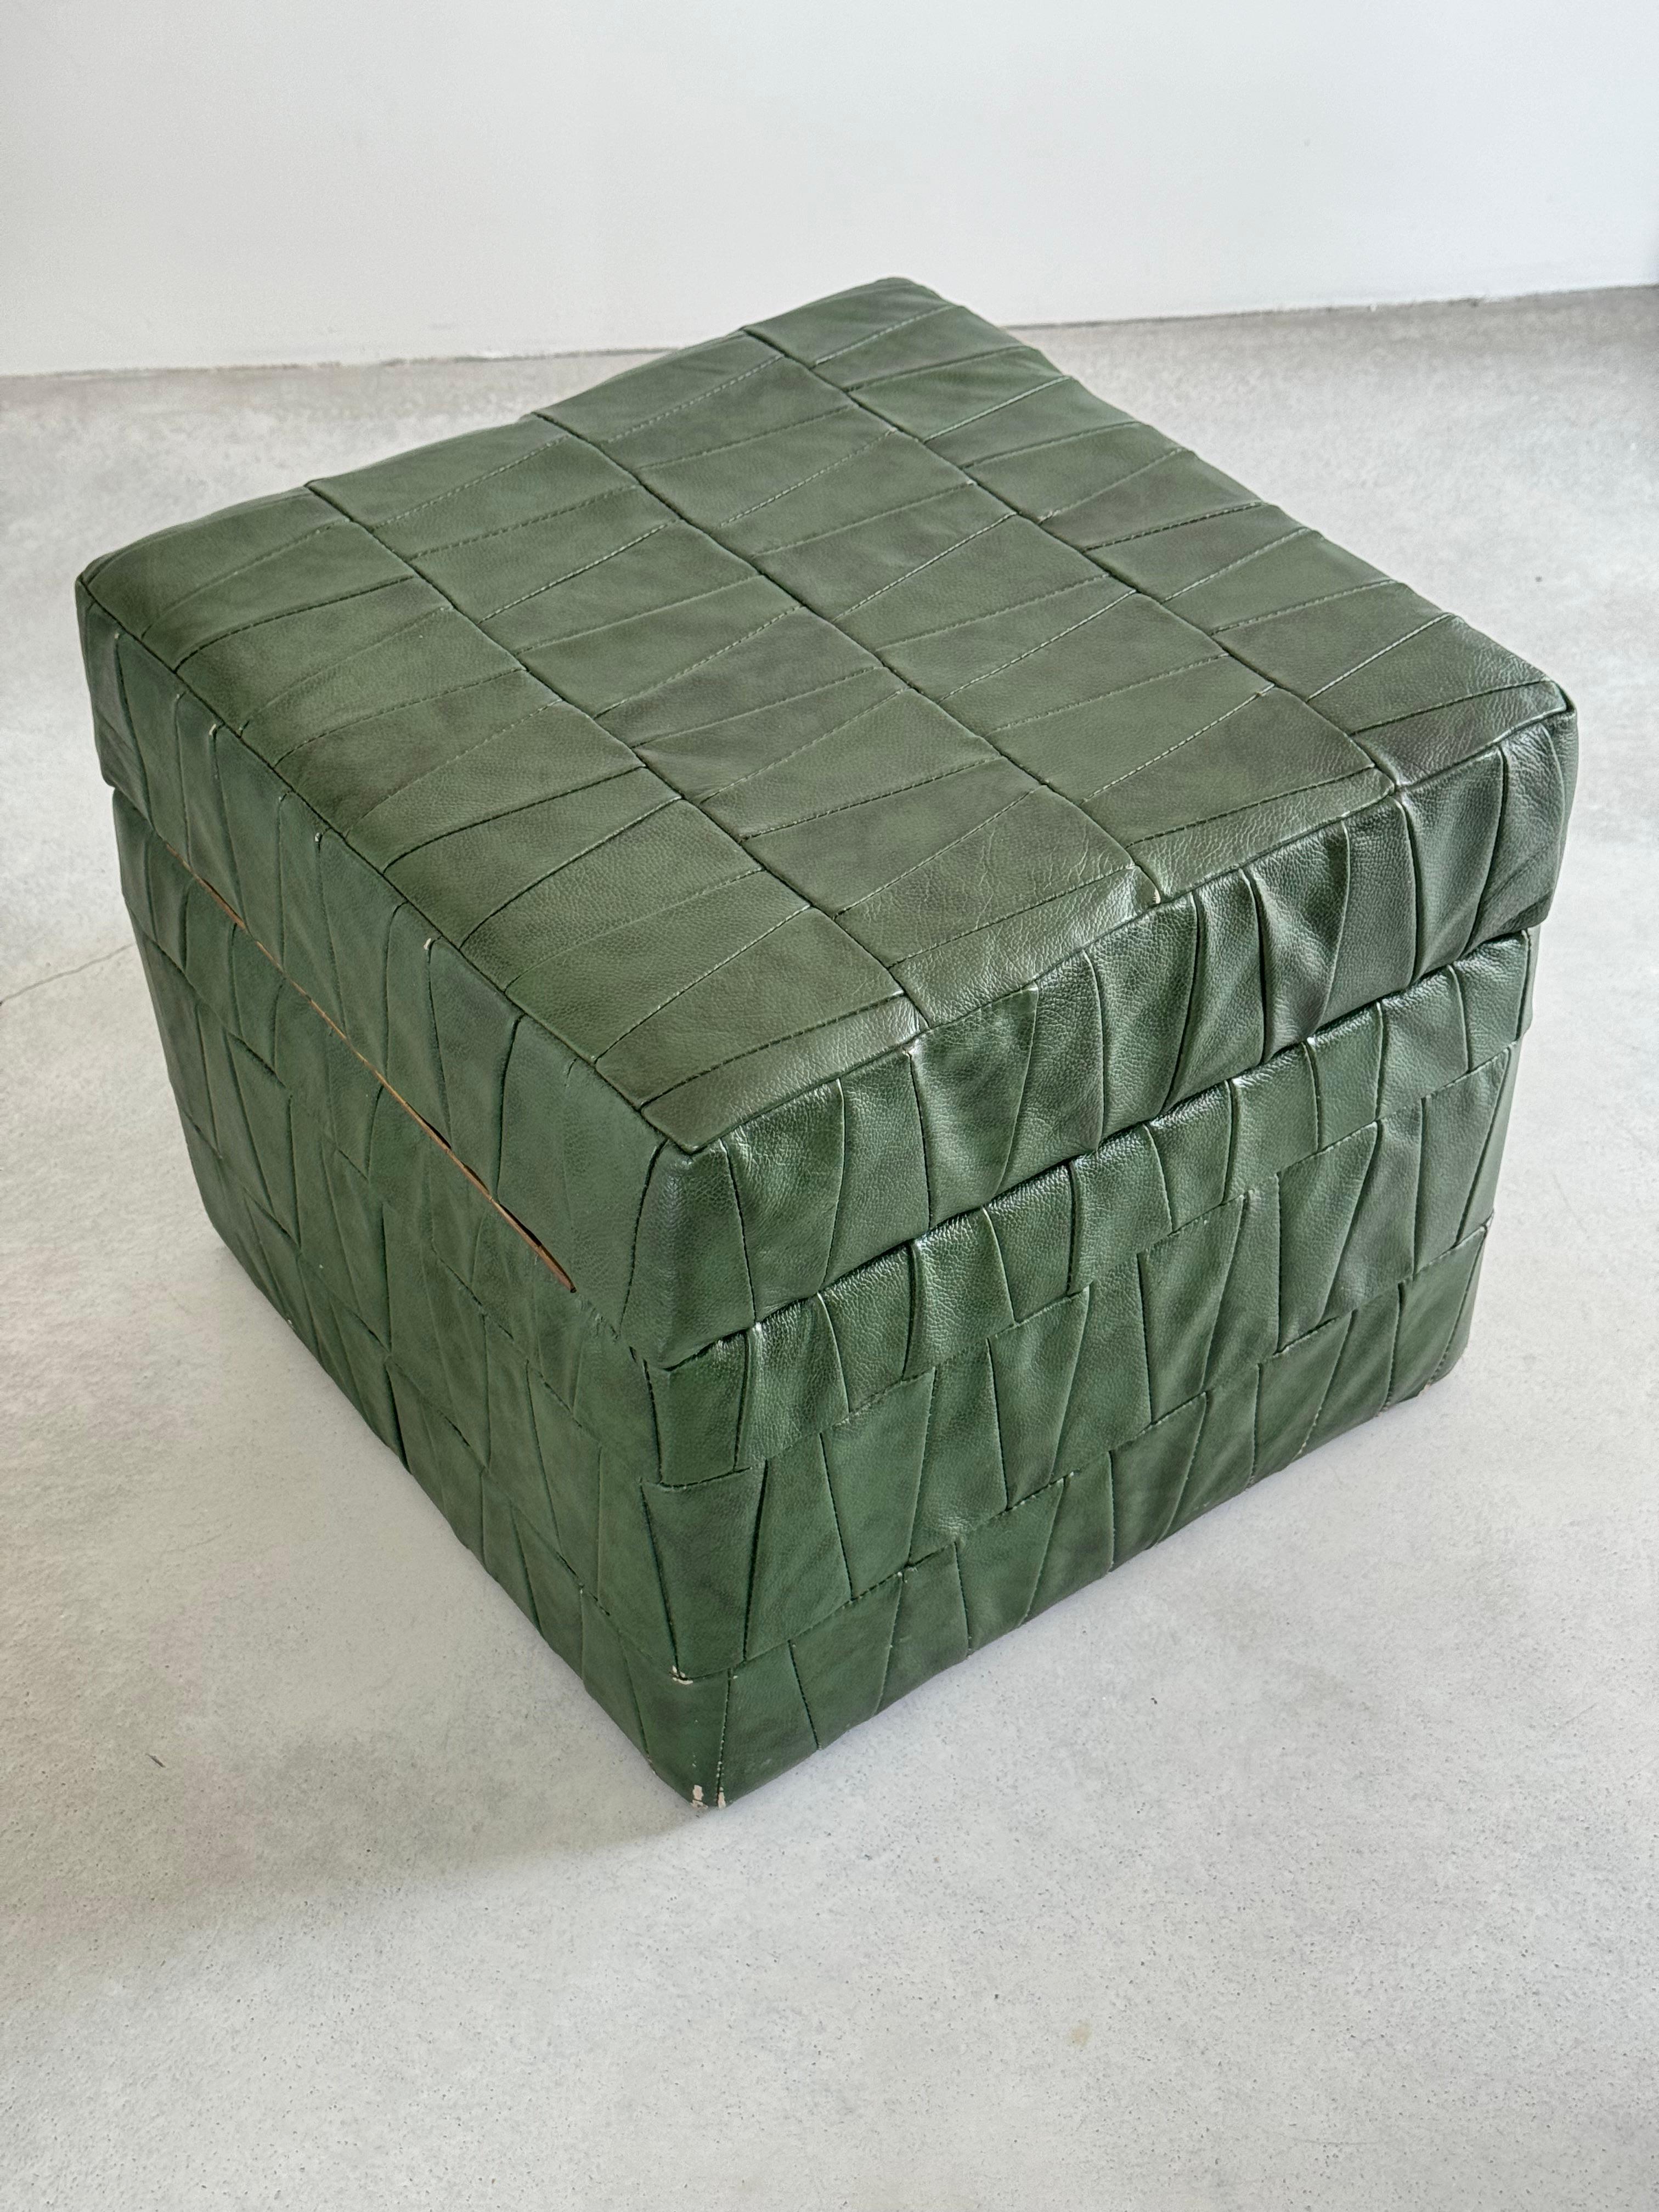 De Sede Design Dark Green Leather Patchwork Storage Ottoman, Switzerland 1970s For Sale 6